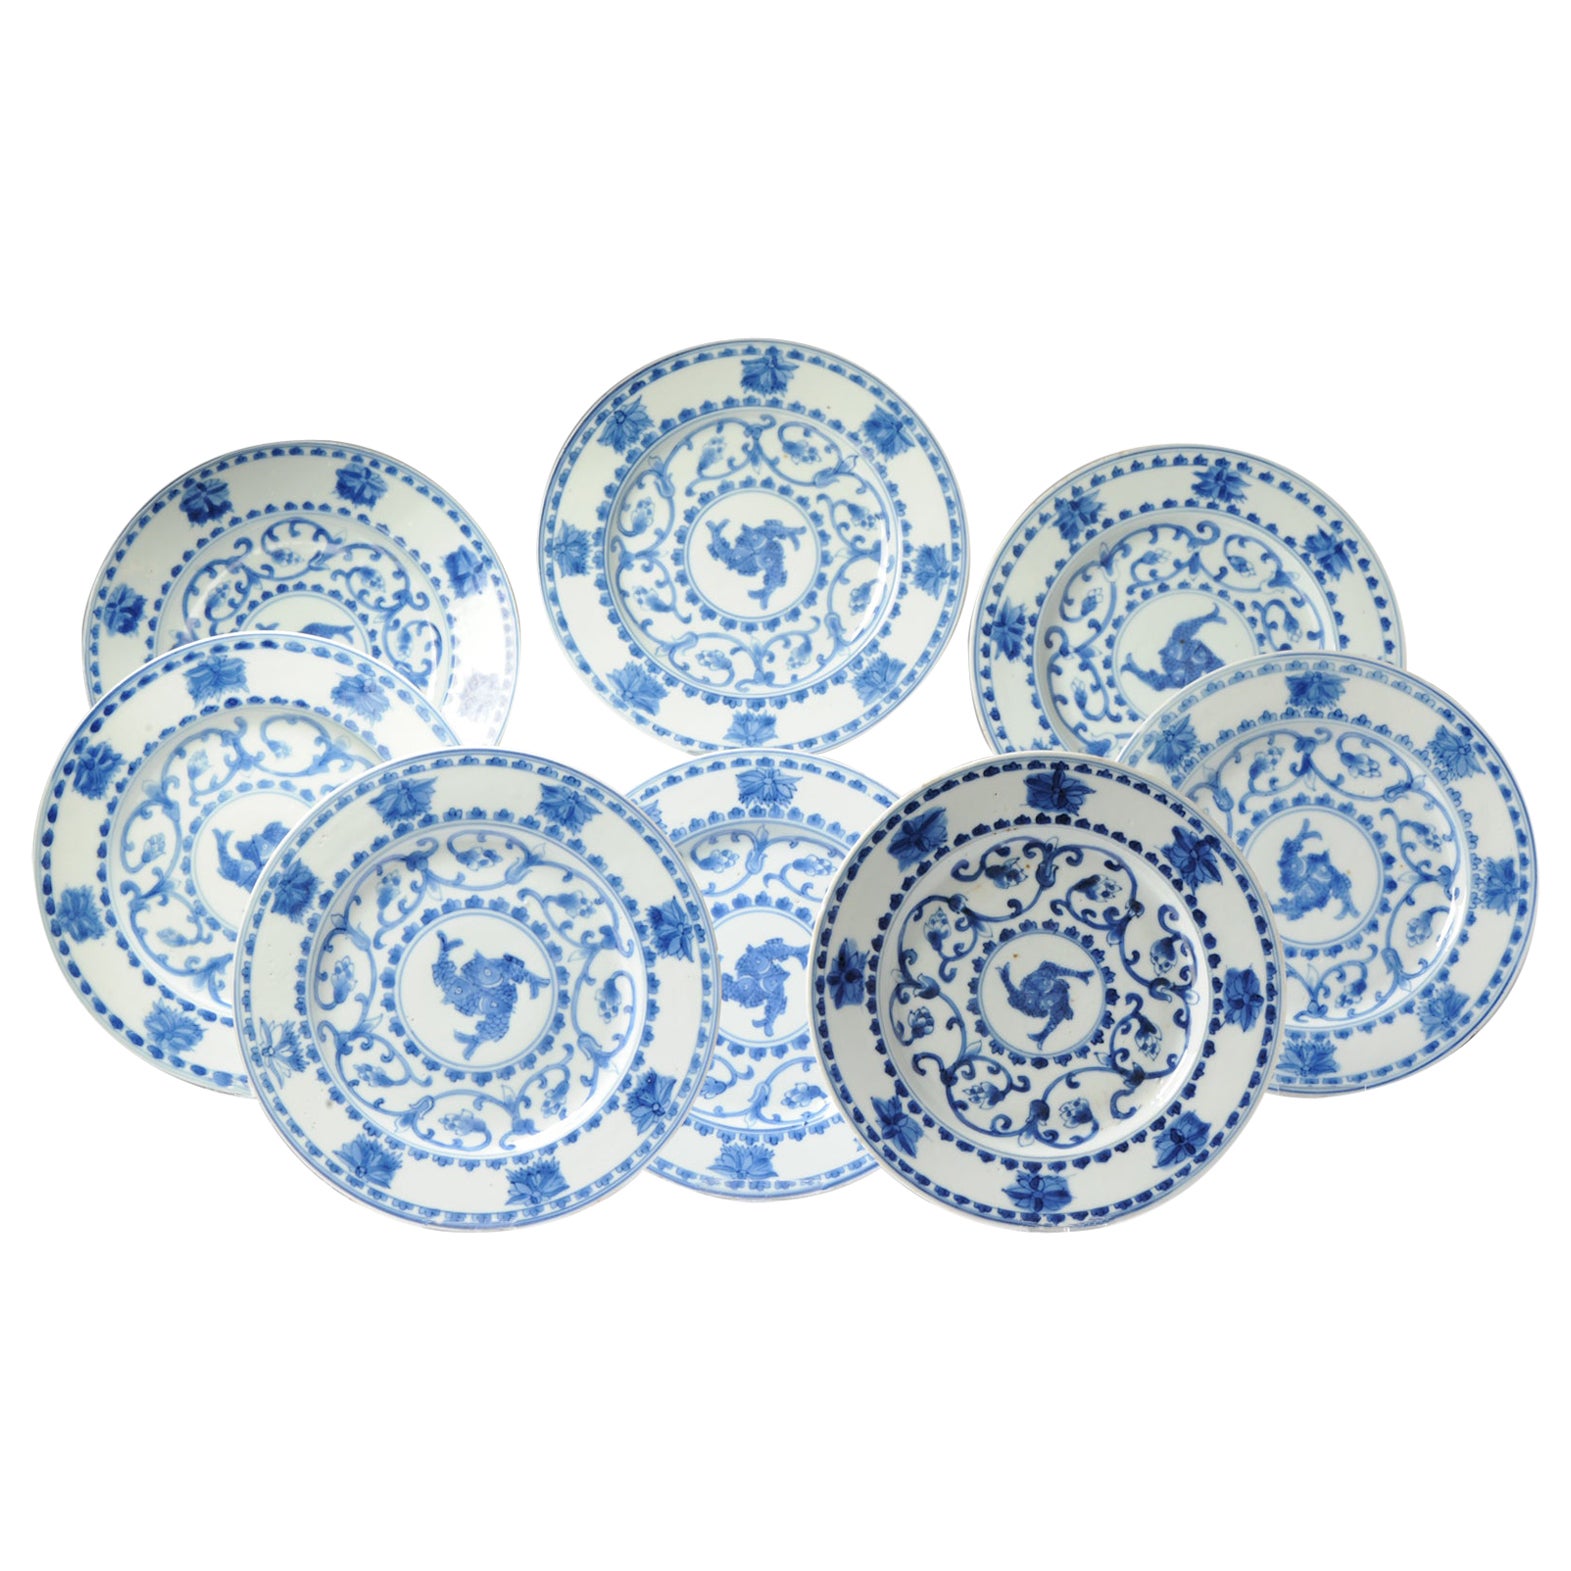 #8 Cena Antigua de Porcelana China del Periodo Kangxi/Yongzheng Azul Blanco del Siglo XVIII